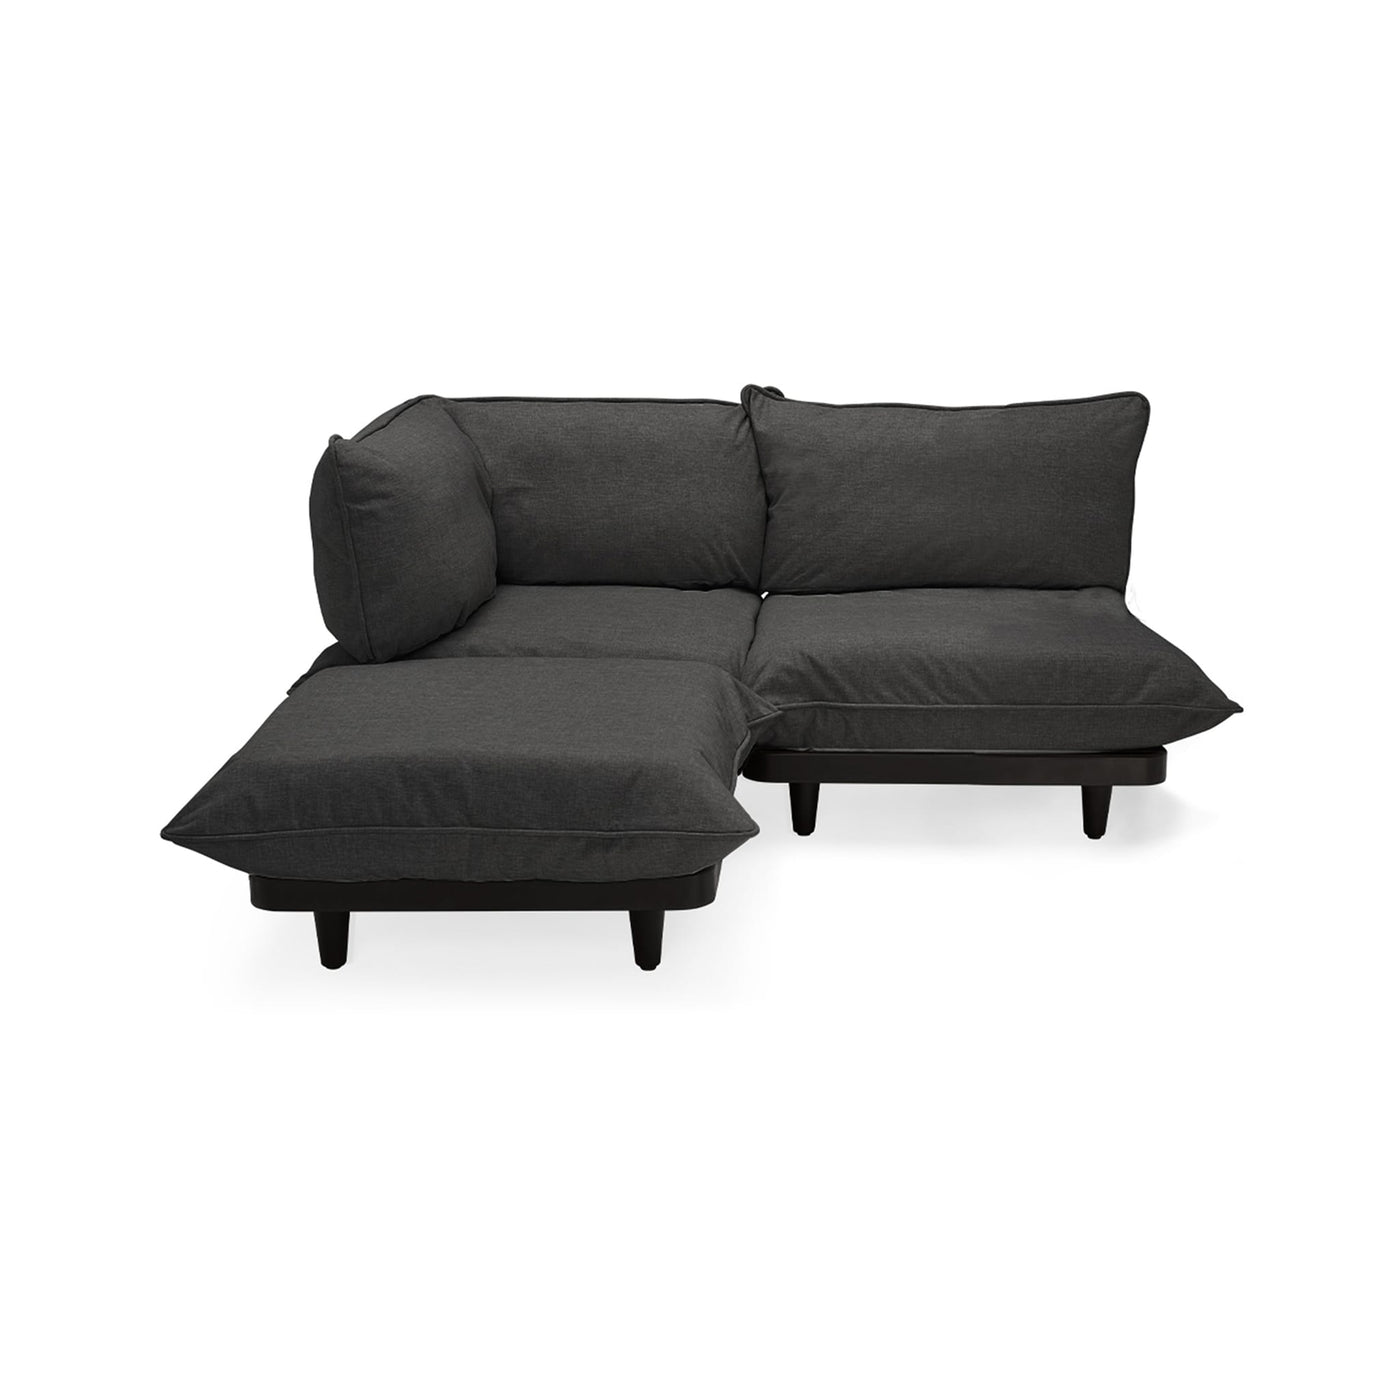 Explorez l'élégance extérieure avec le sofa sectionnel Paletti de Fatboy. Robuste, adaptable et facile à entretenir, il redéfinit le confort dans votre espace canadien. Gris tonitruant.